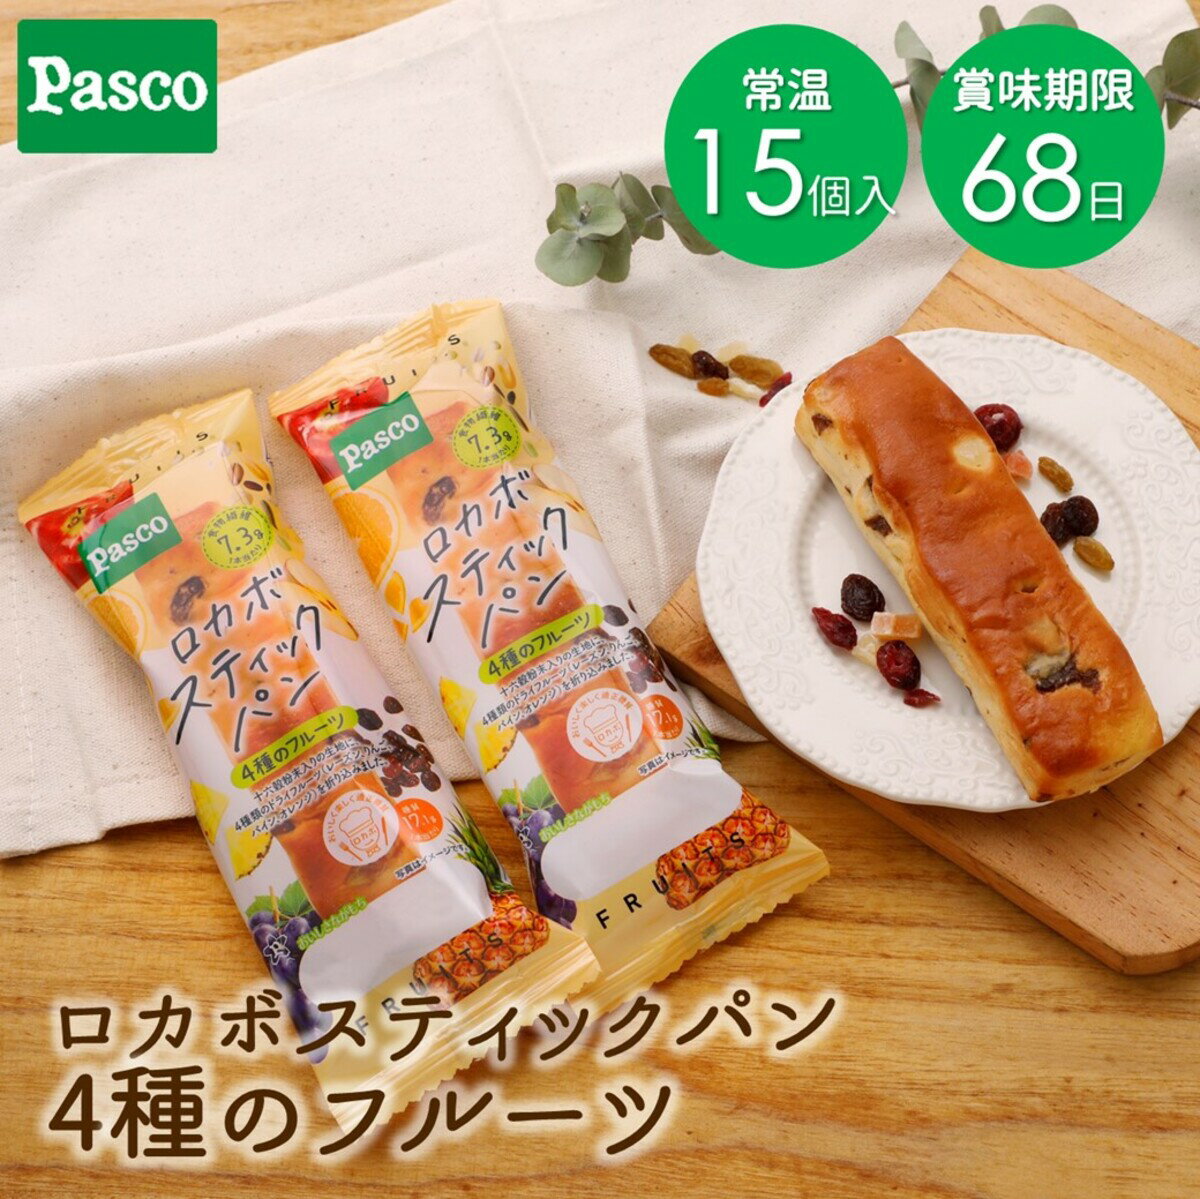 Pasco ロカボスティックパン 4種のフ